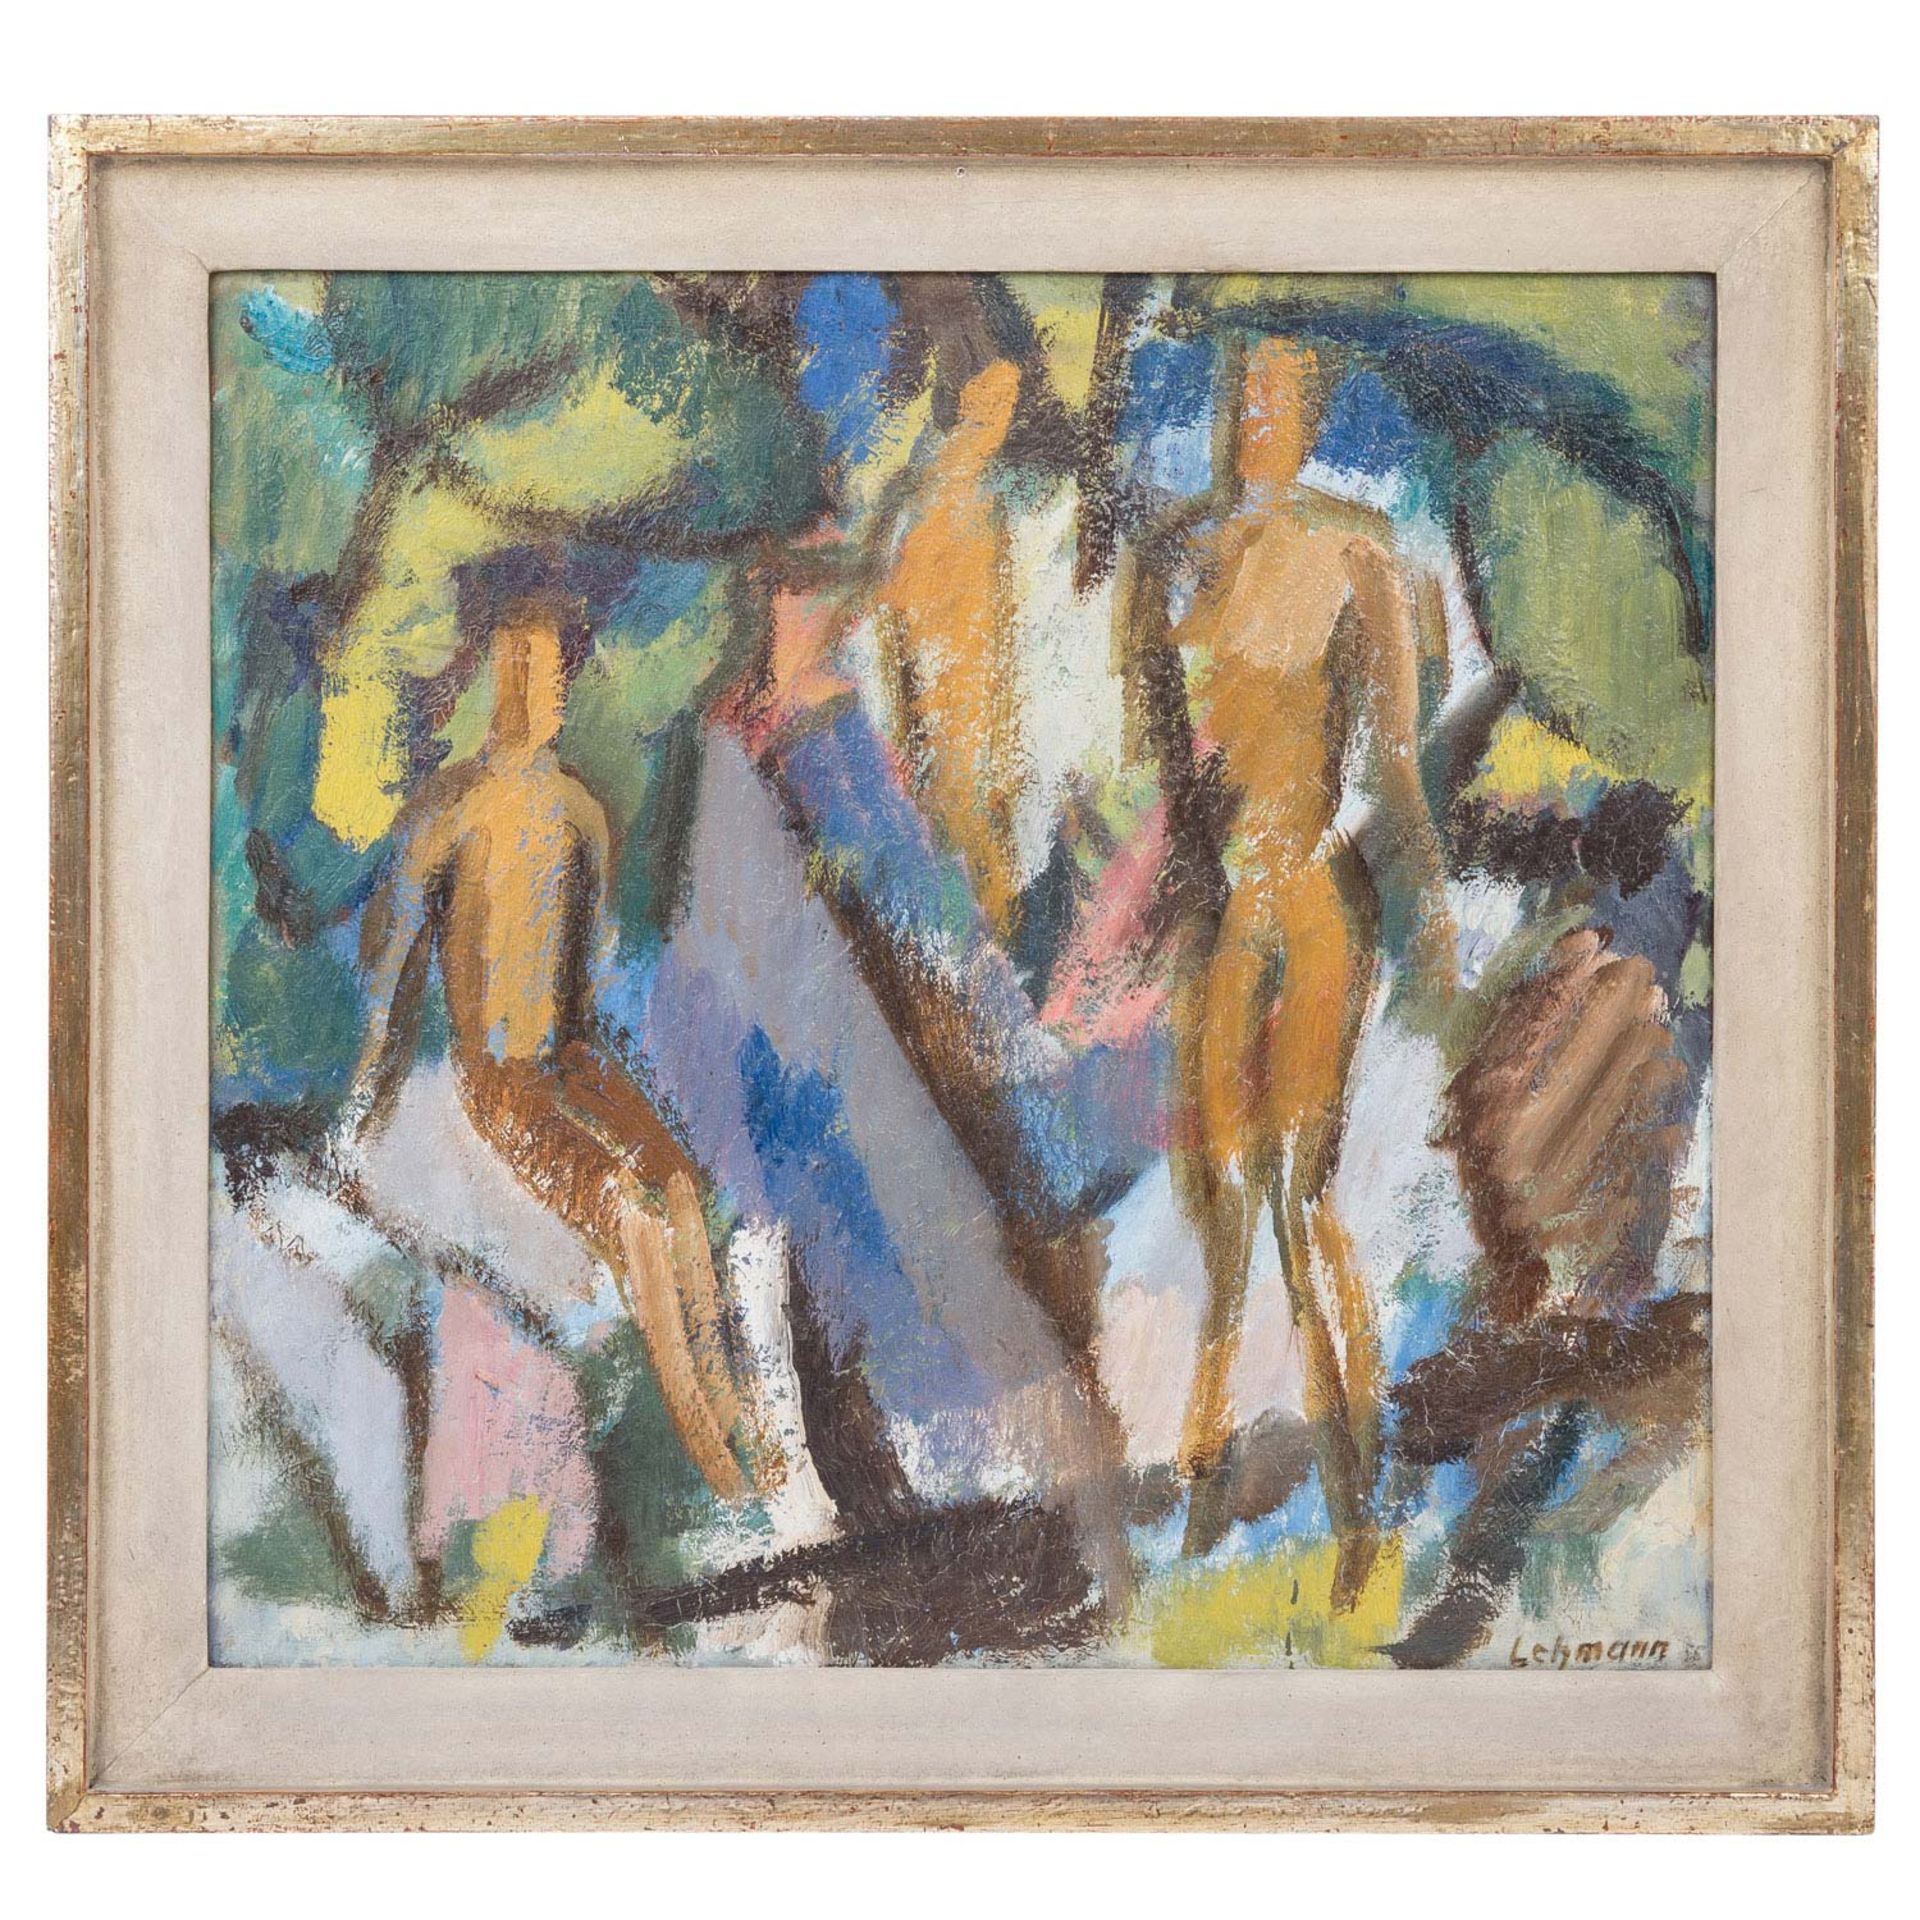 LEHMANN, ALFRED (1899-1979), "Figuren", 1958, - Bild 2 aus 4